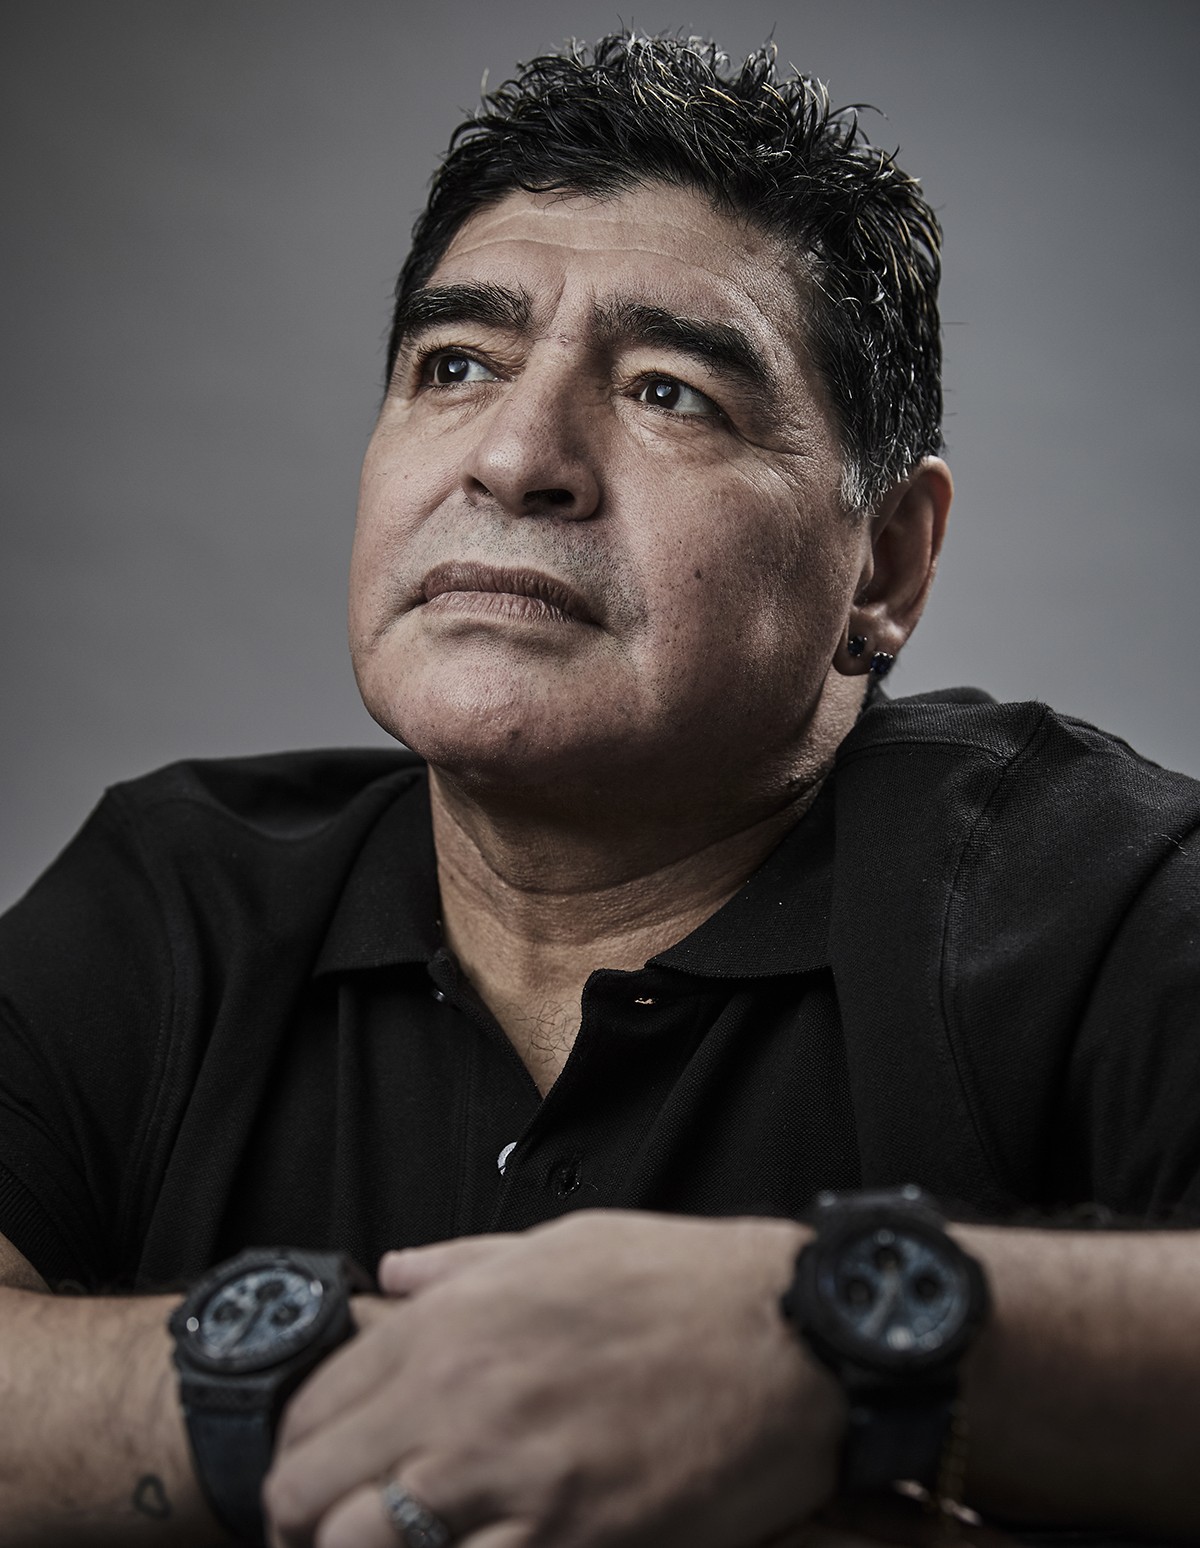 Morre o ex-jogador de futebol Maradona (Foto: Getty Images)